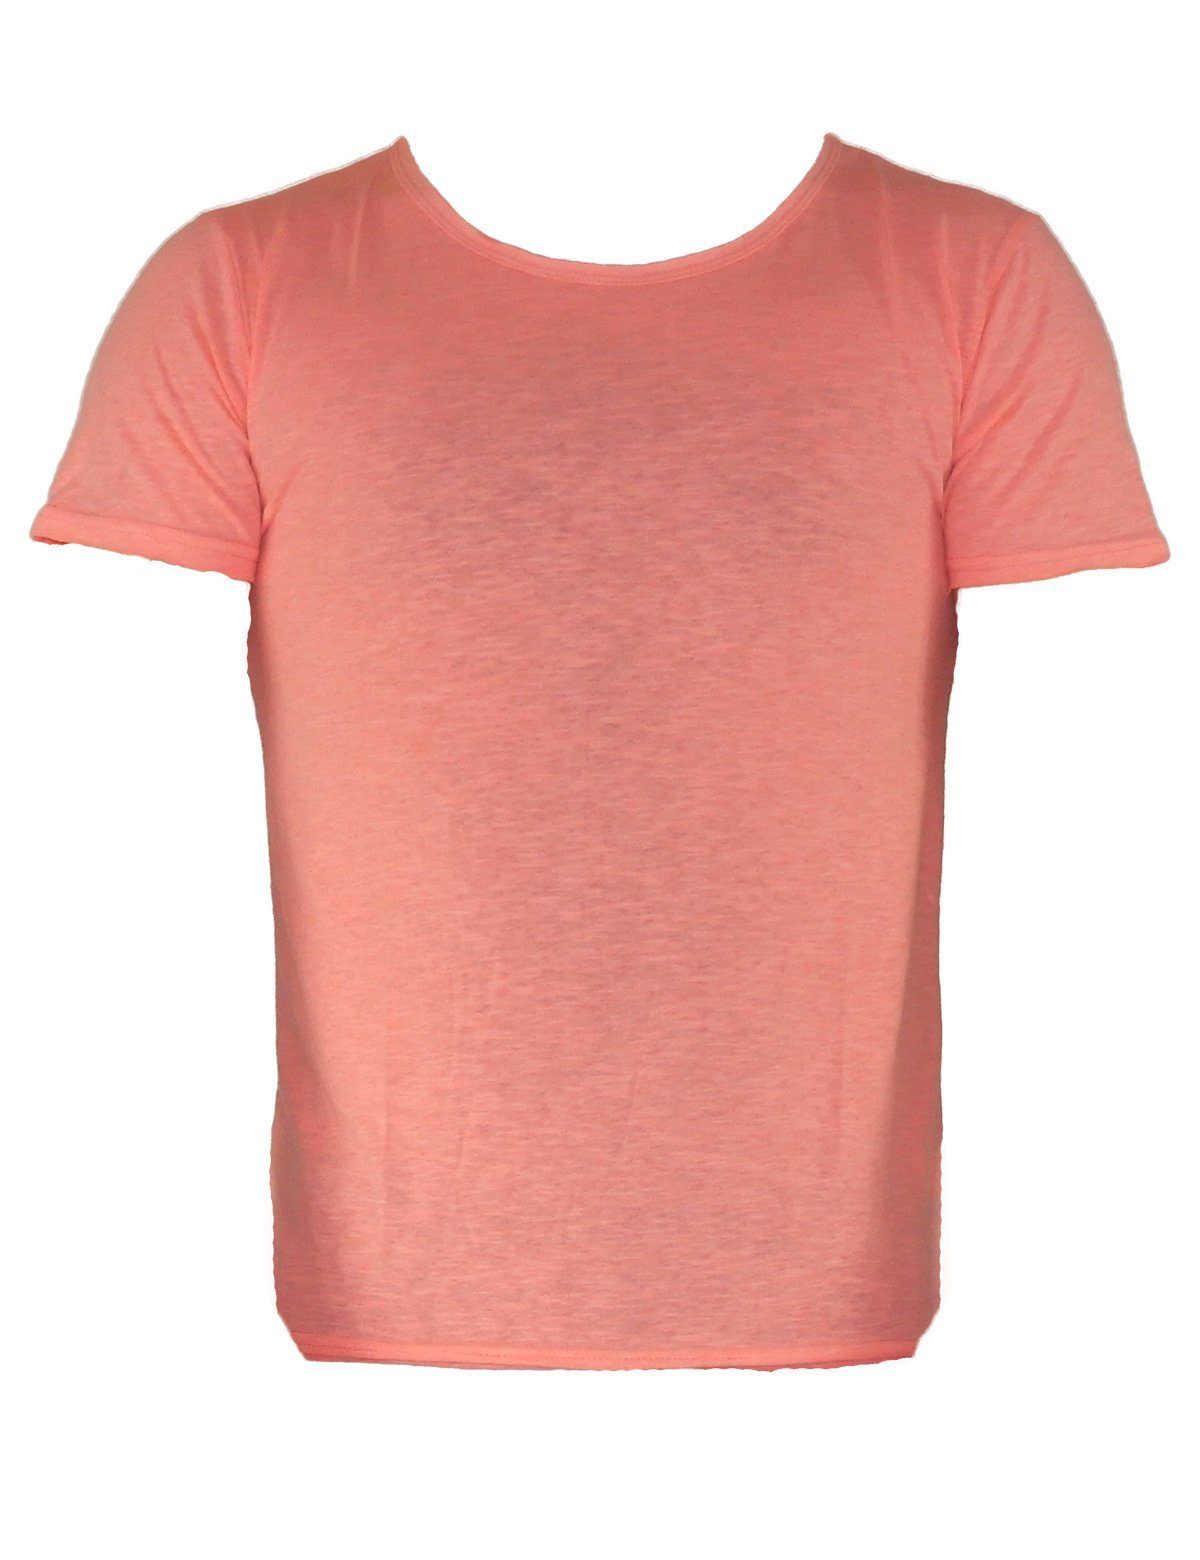 YESET T-Shirt Herren Shirt T-Shirt Poloshirt Tank Top Hemd Kurzarm Figurbetont 551 Rosa